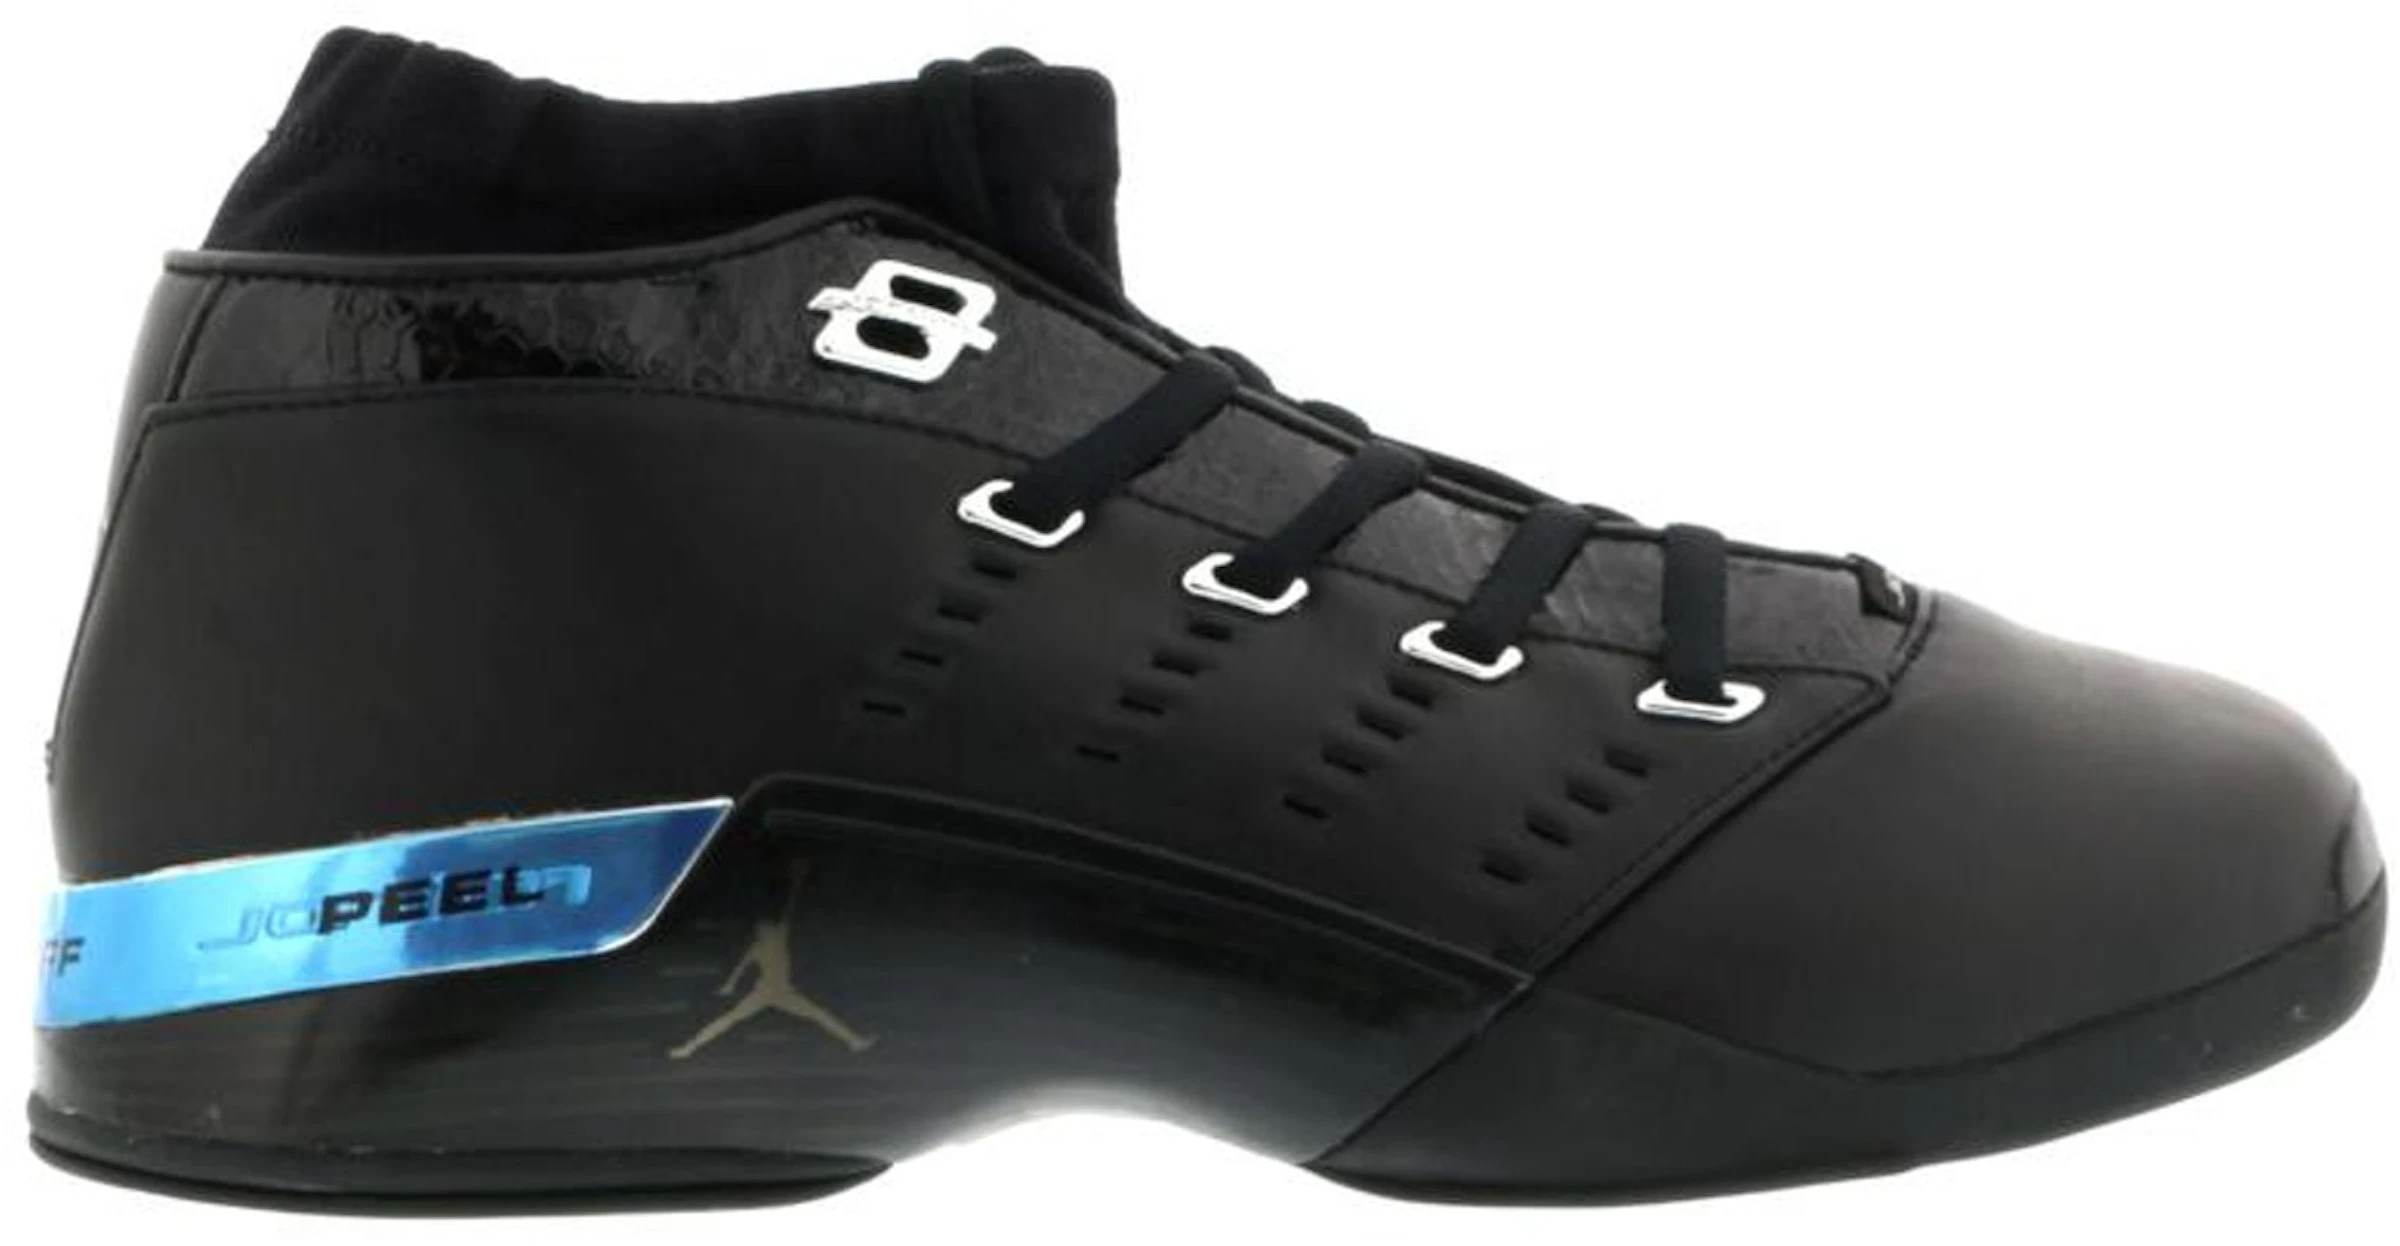 Compra Jordan 17 Calzado y sneakers nuevos - StockX